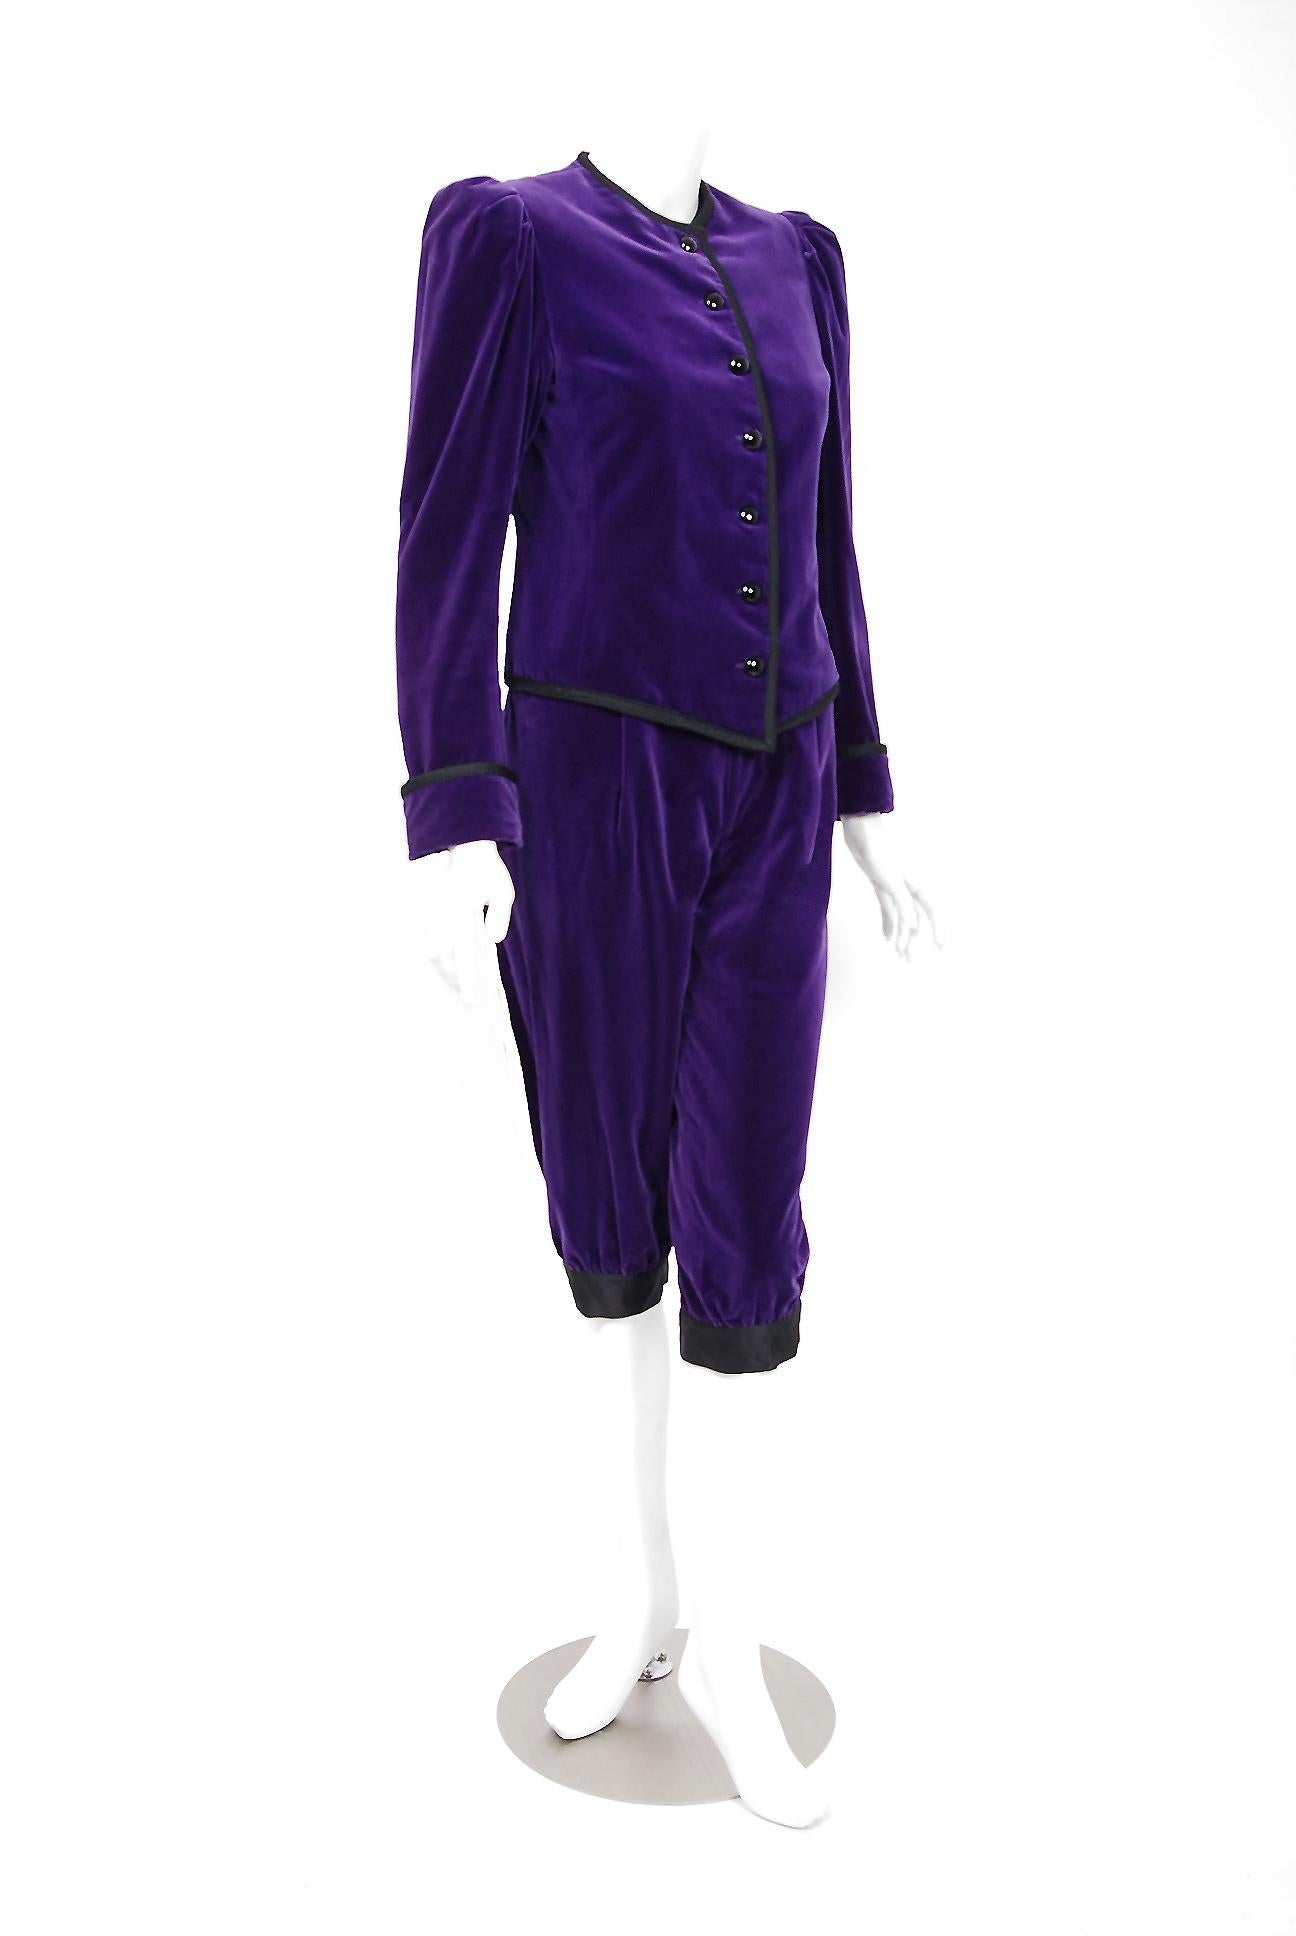 purple velvet coat